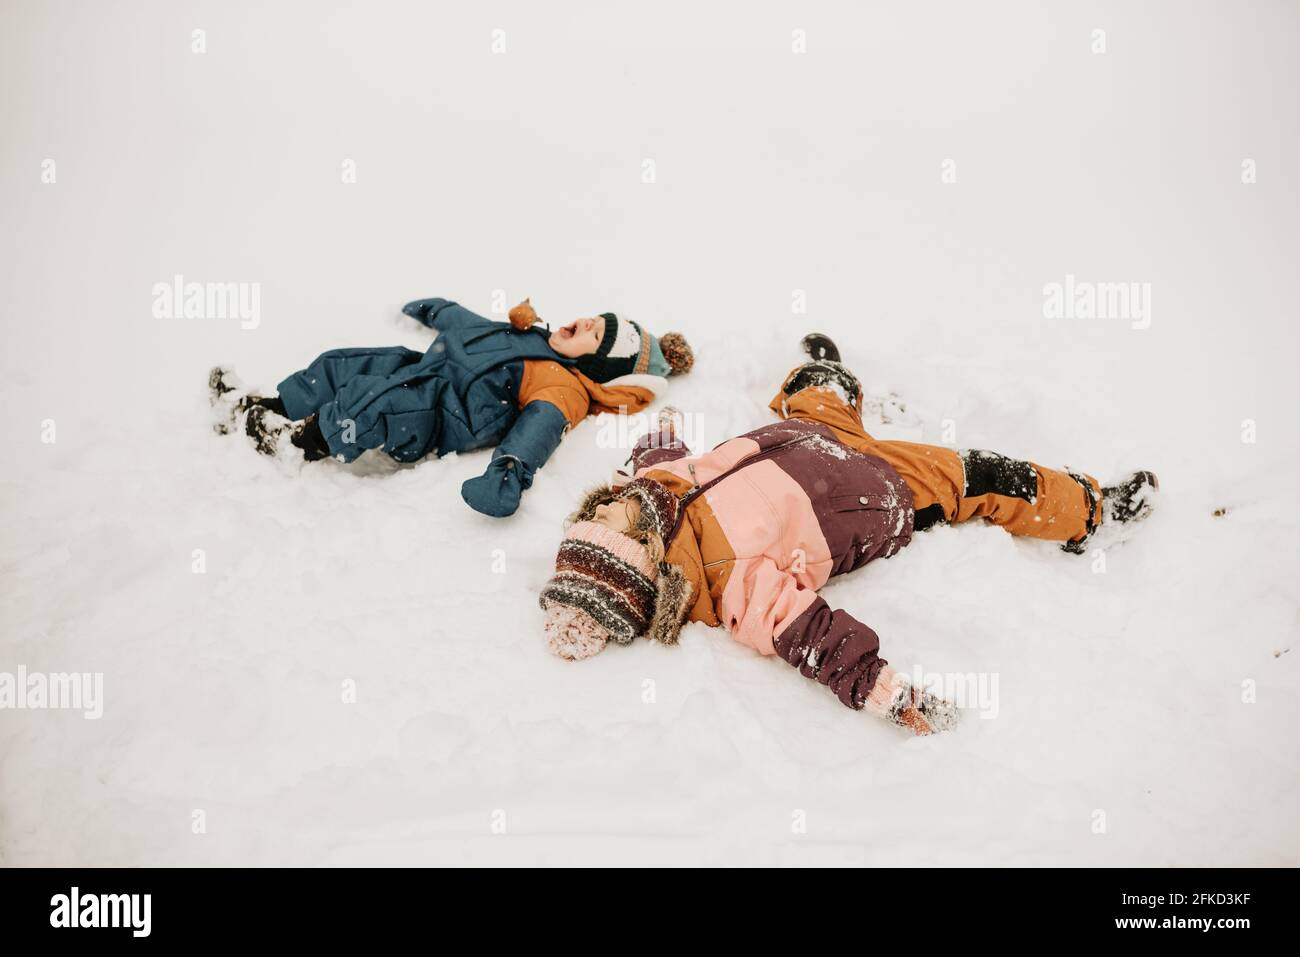 Canada, Ontario, frère et sœur faisant des anges de neige Banque D'Images